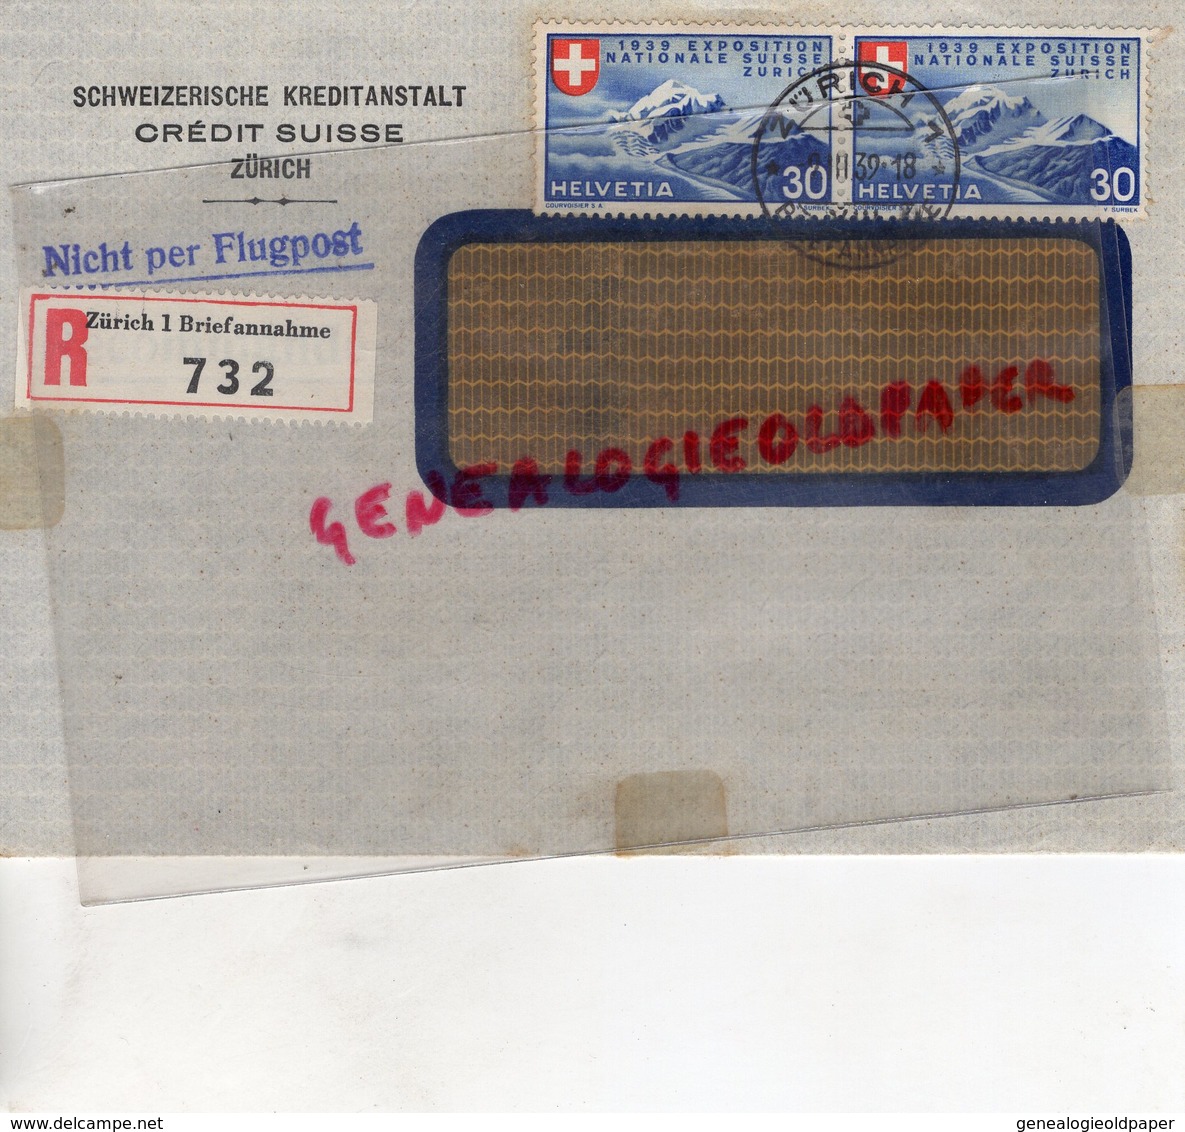 SUISSE - ZURICH- RARE ENVELOPPE SCHWEIZERISCHE KREDITANSTALT- CREDIT SUISSE -1939- NICHT PER FLUGPOST-SAINT JUNIEN 87 - Suiza